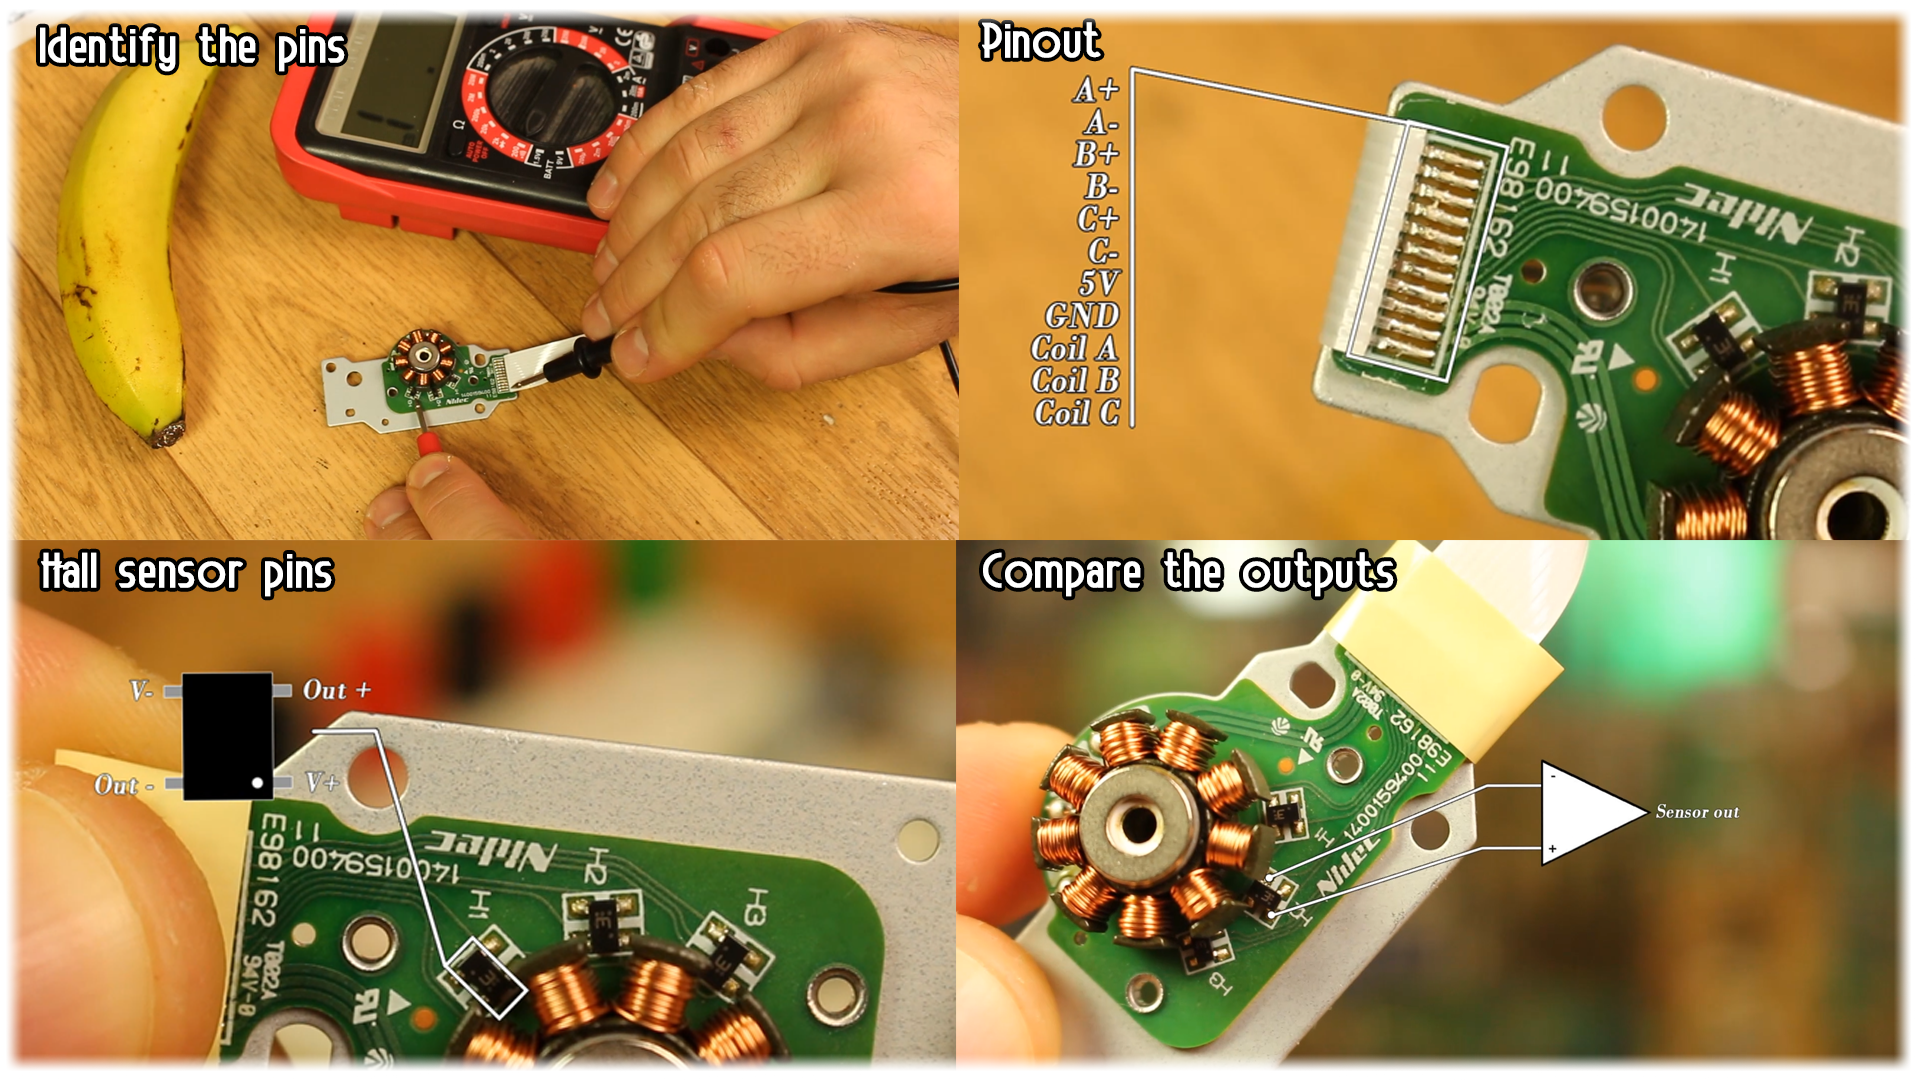 CD writer brushless motor pins circuit